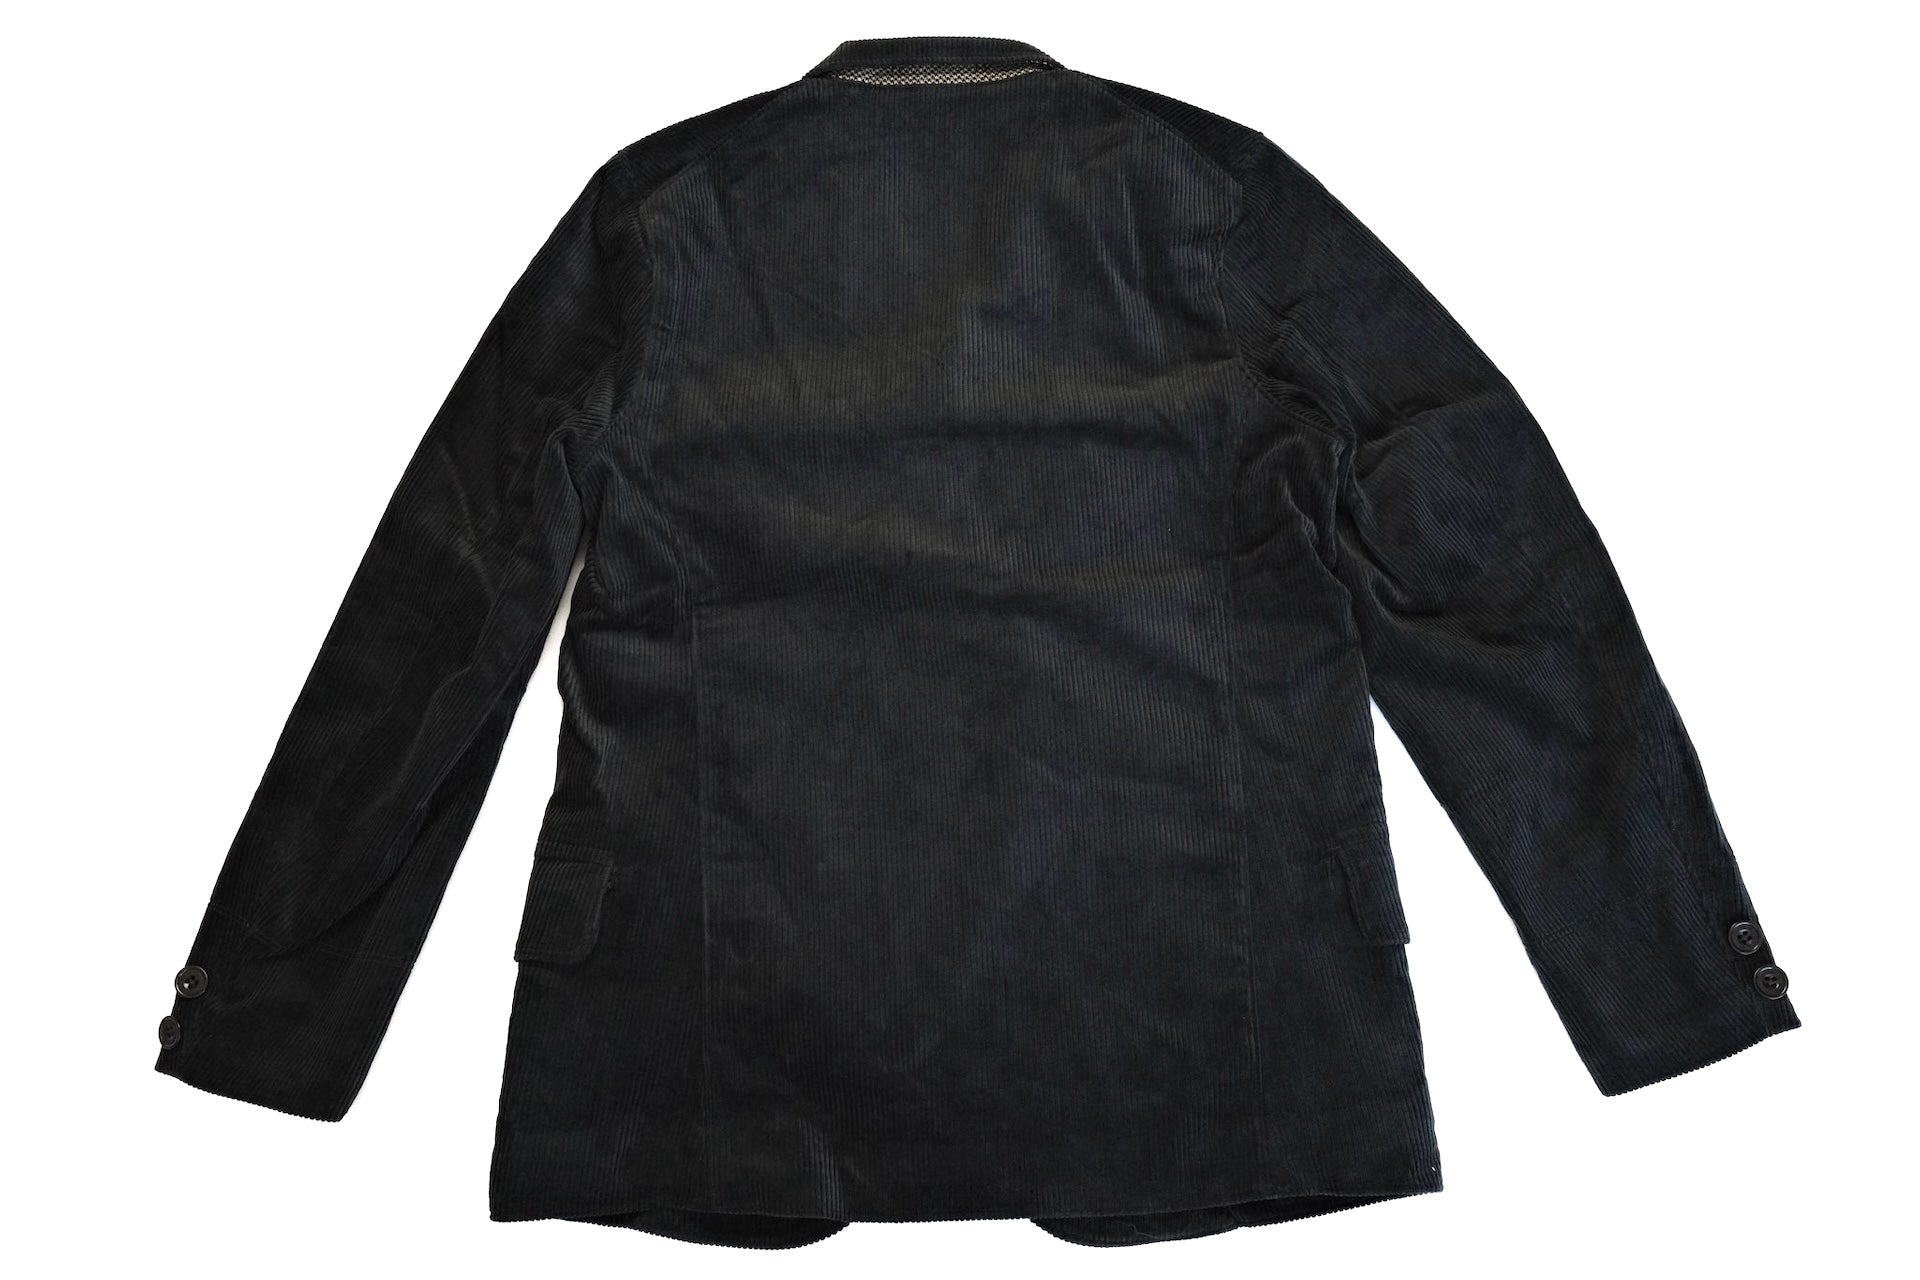 Freewheelers "Jackson" Corduroy Sack Coat (Black)